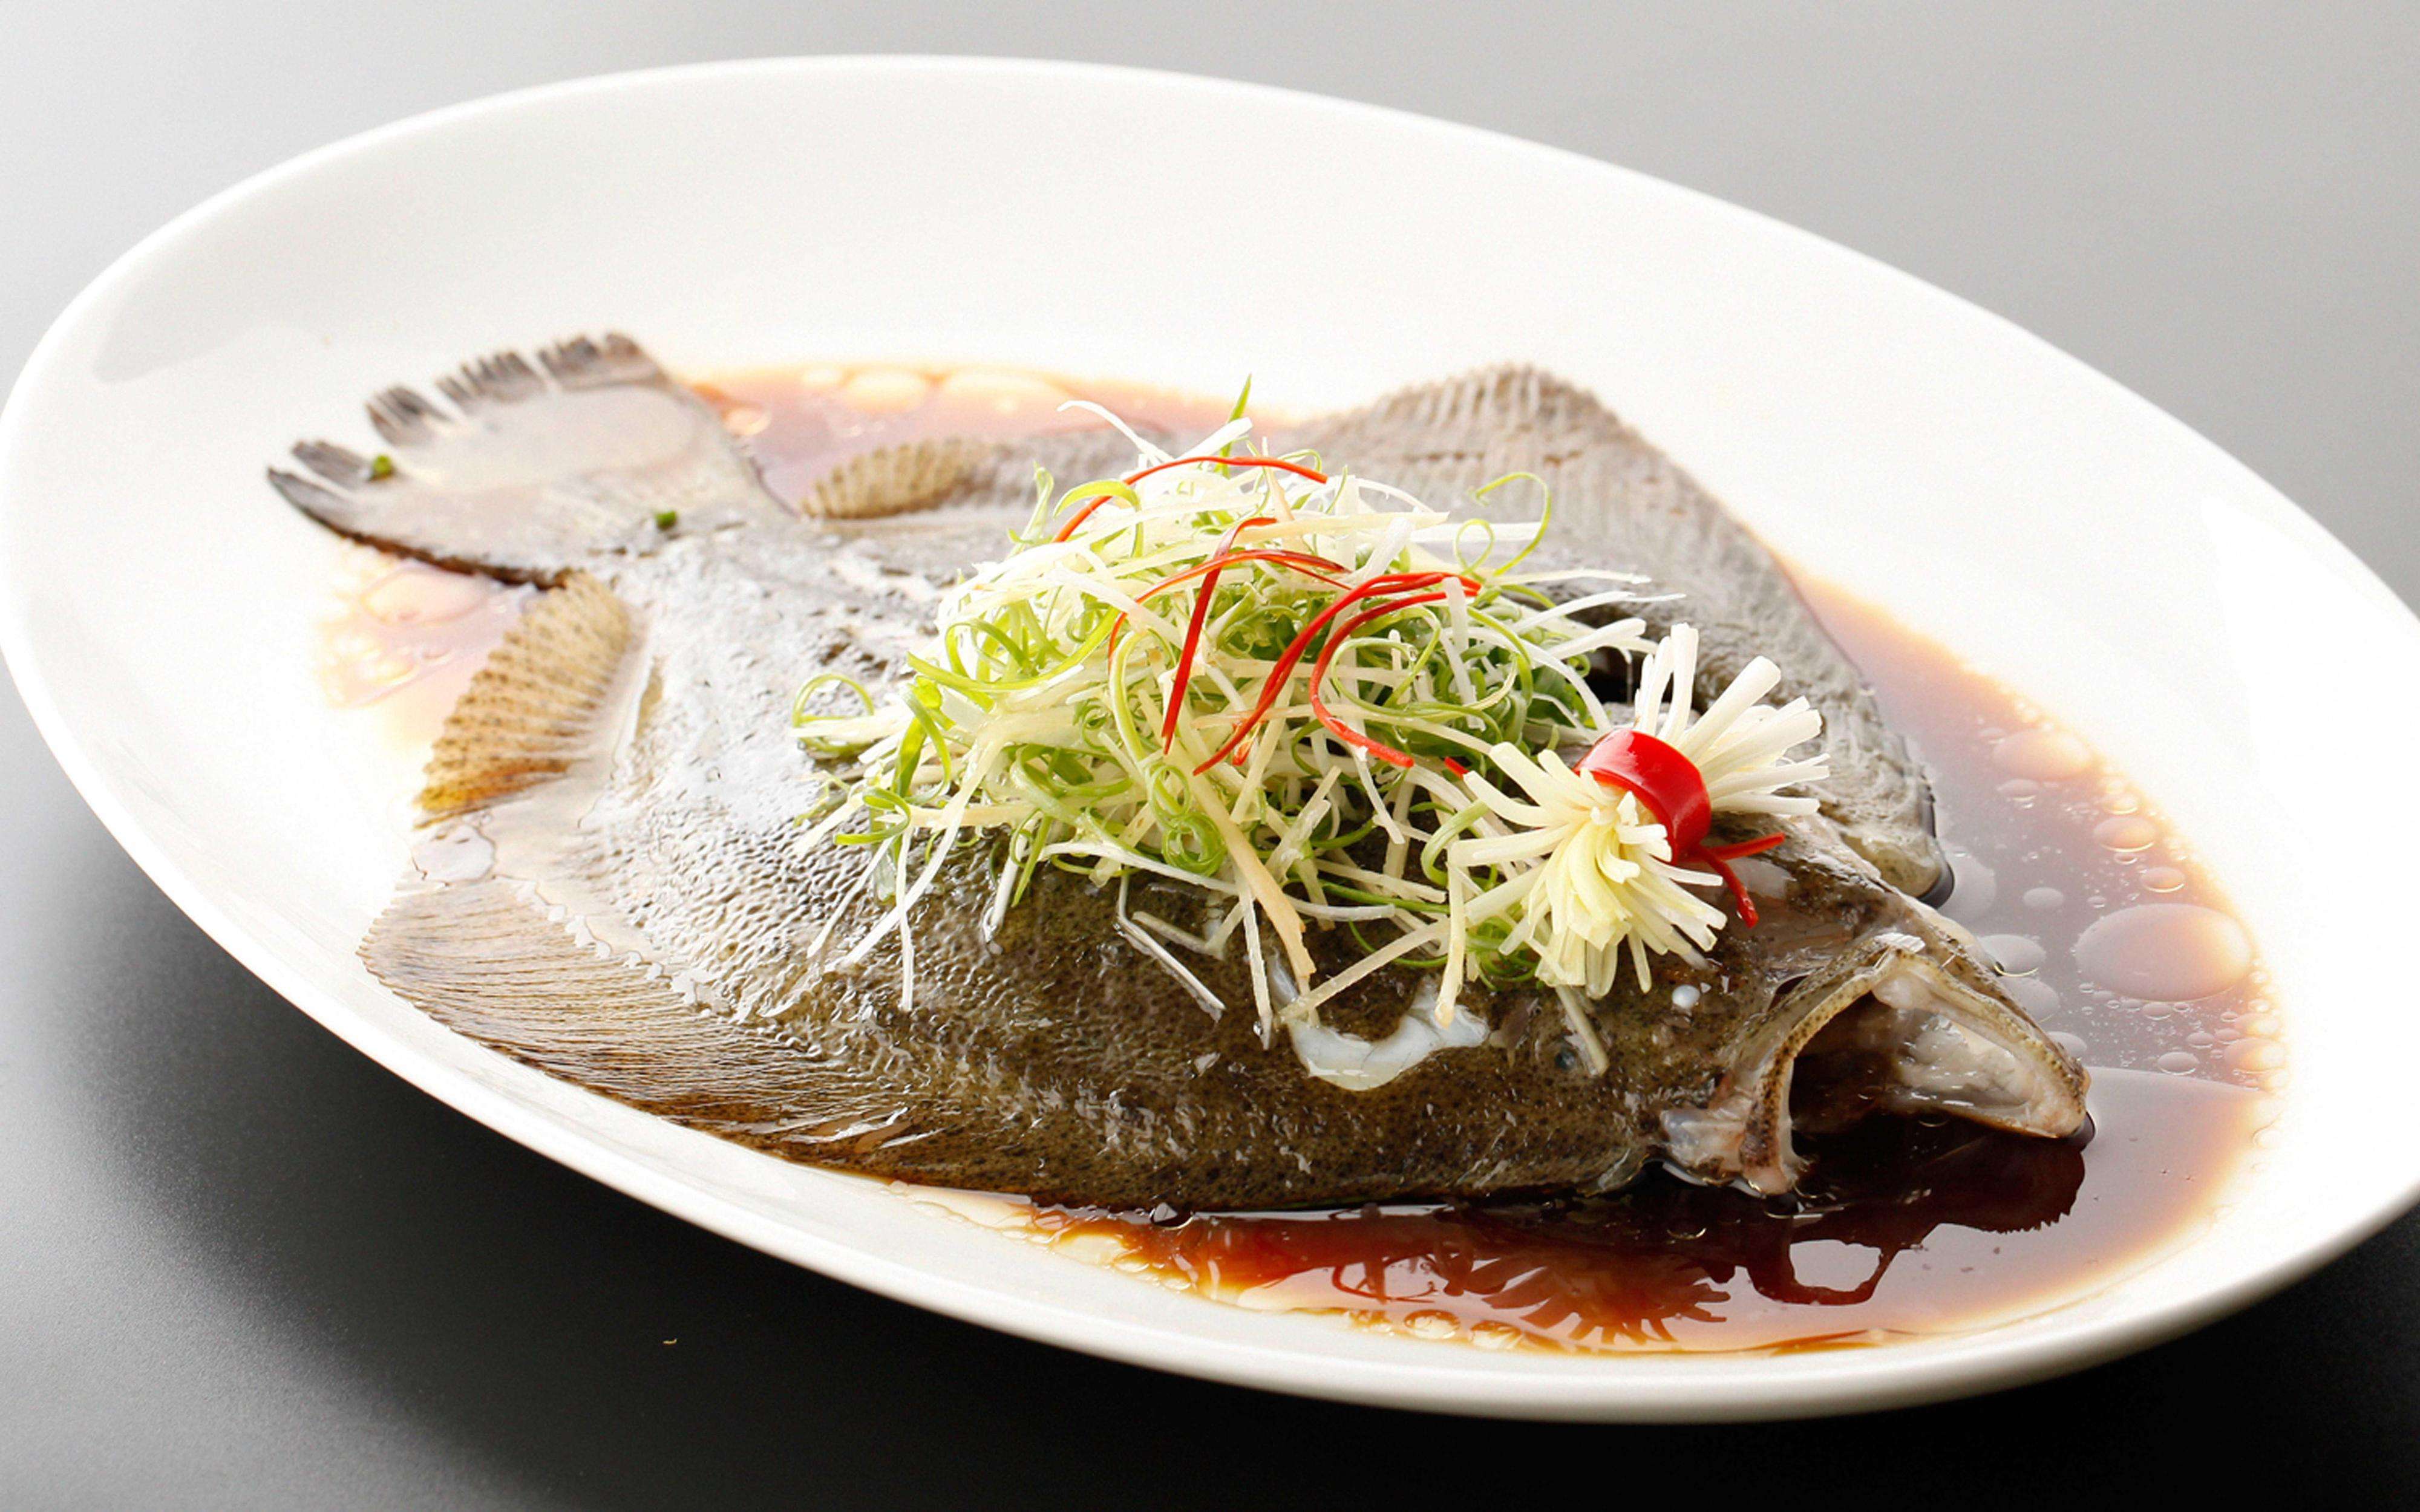 蒸鱼3,蒸蒸是一种常见的烹饪方法,其原理是将经过调味后的原材料放在